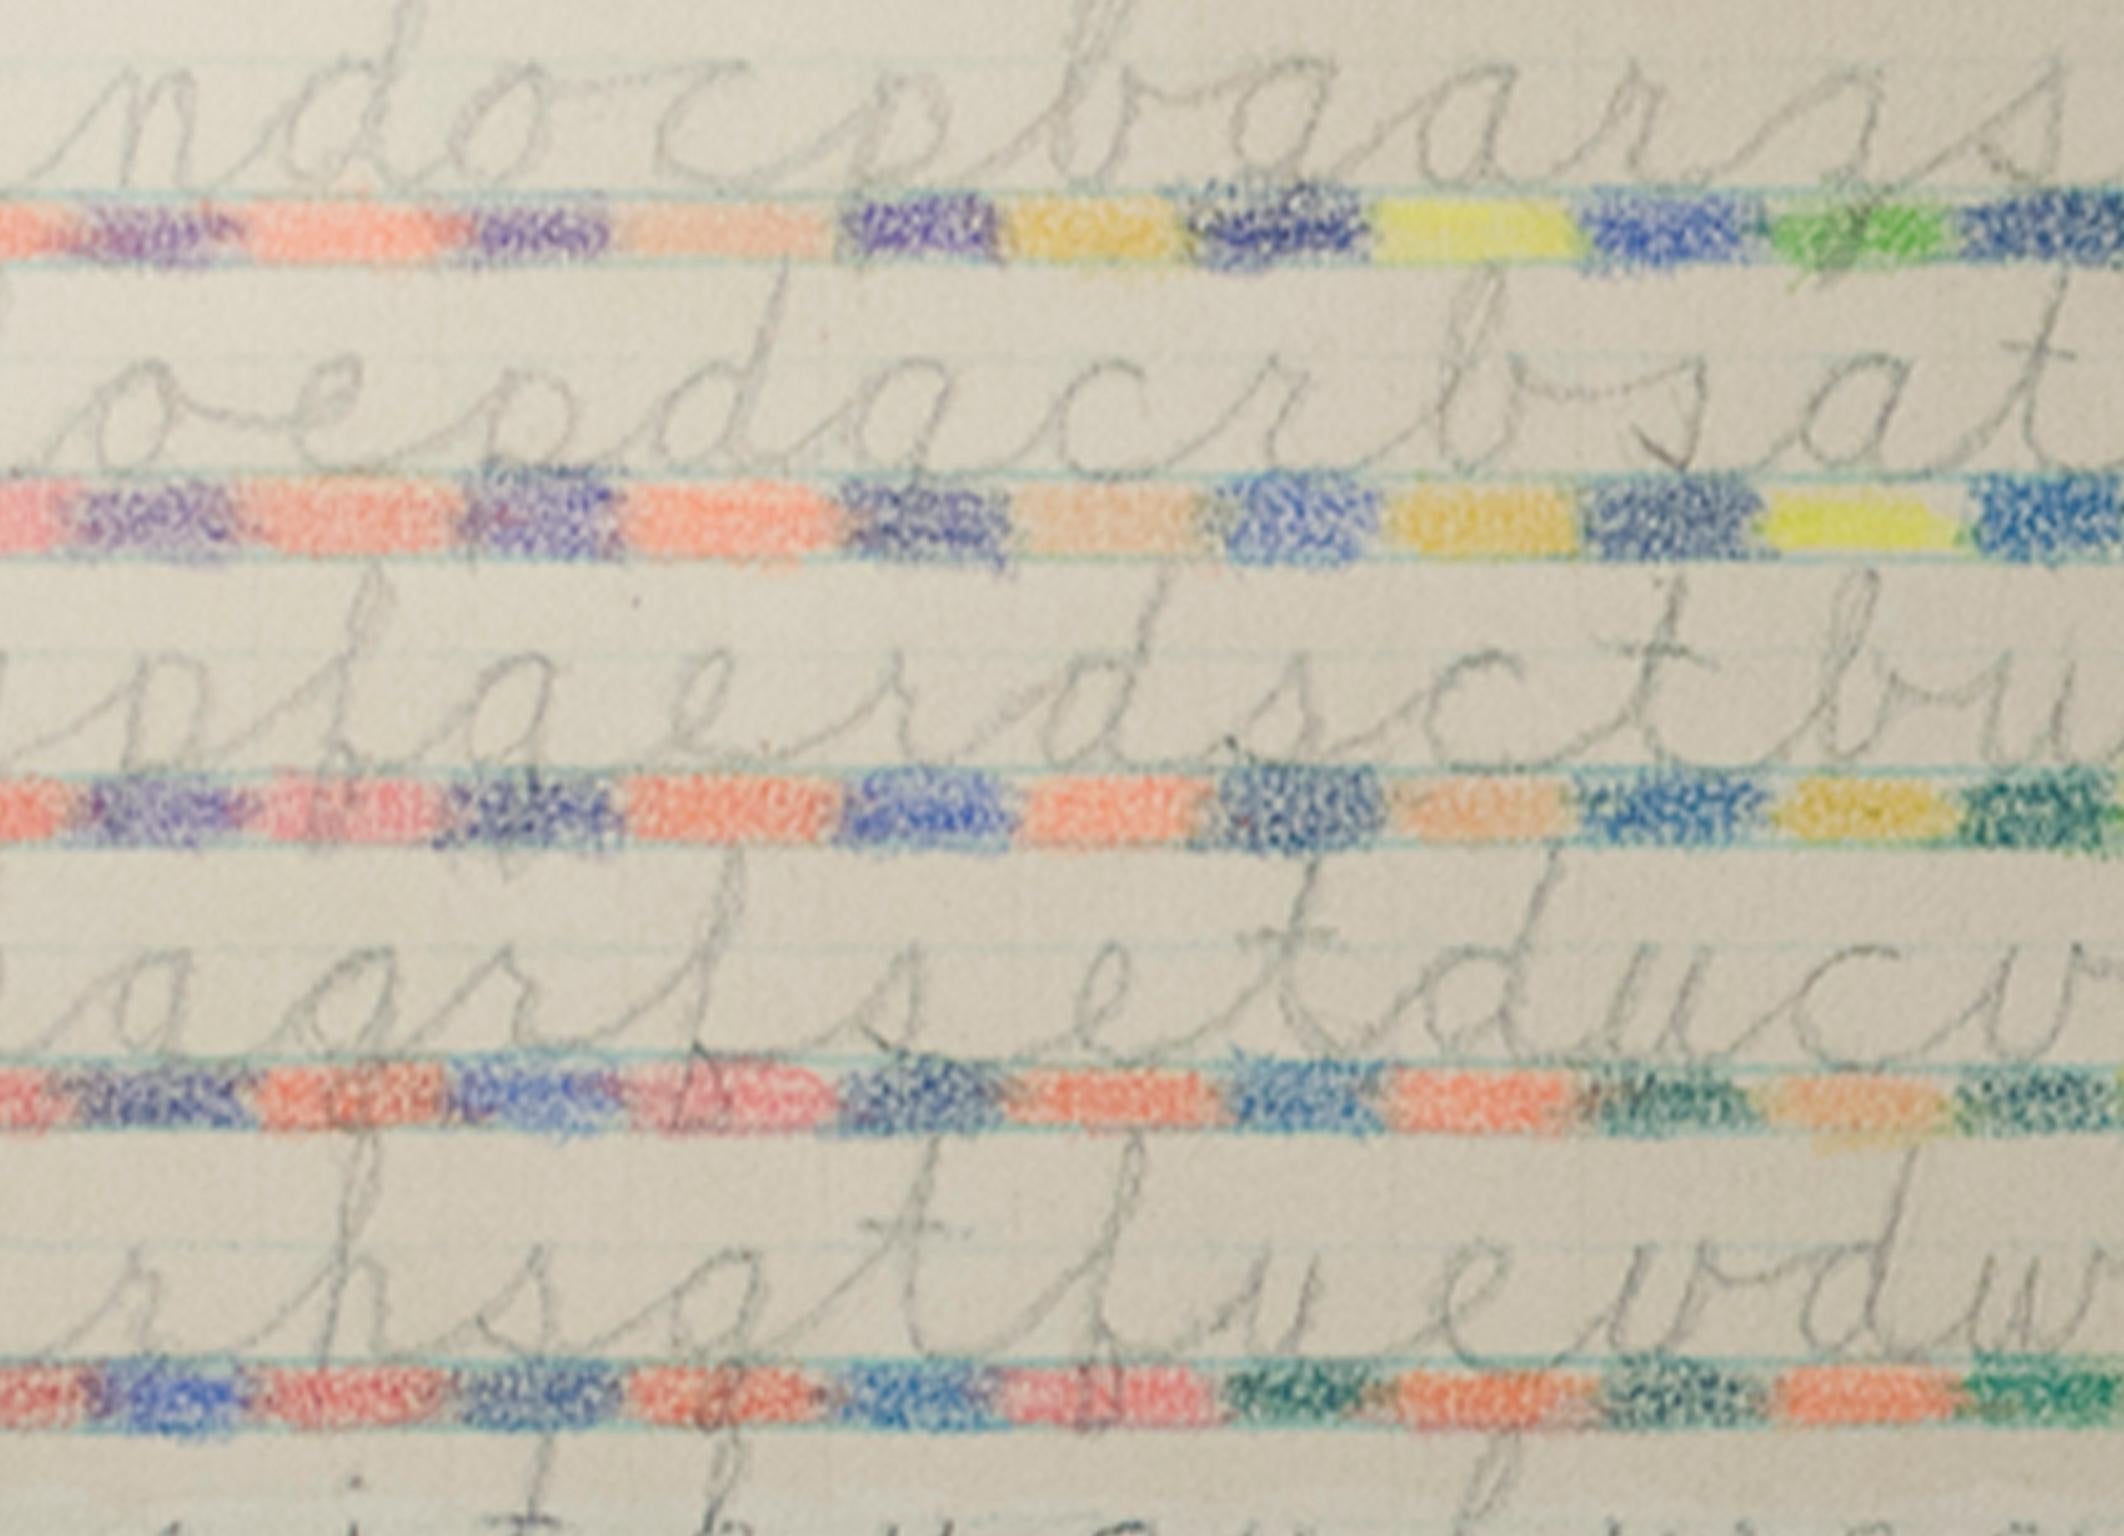 crayon letters kc